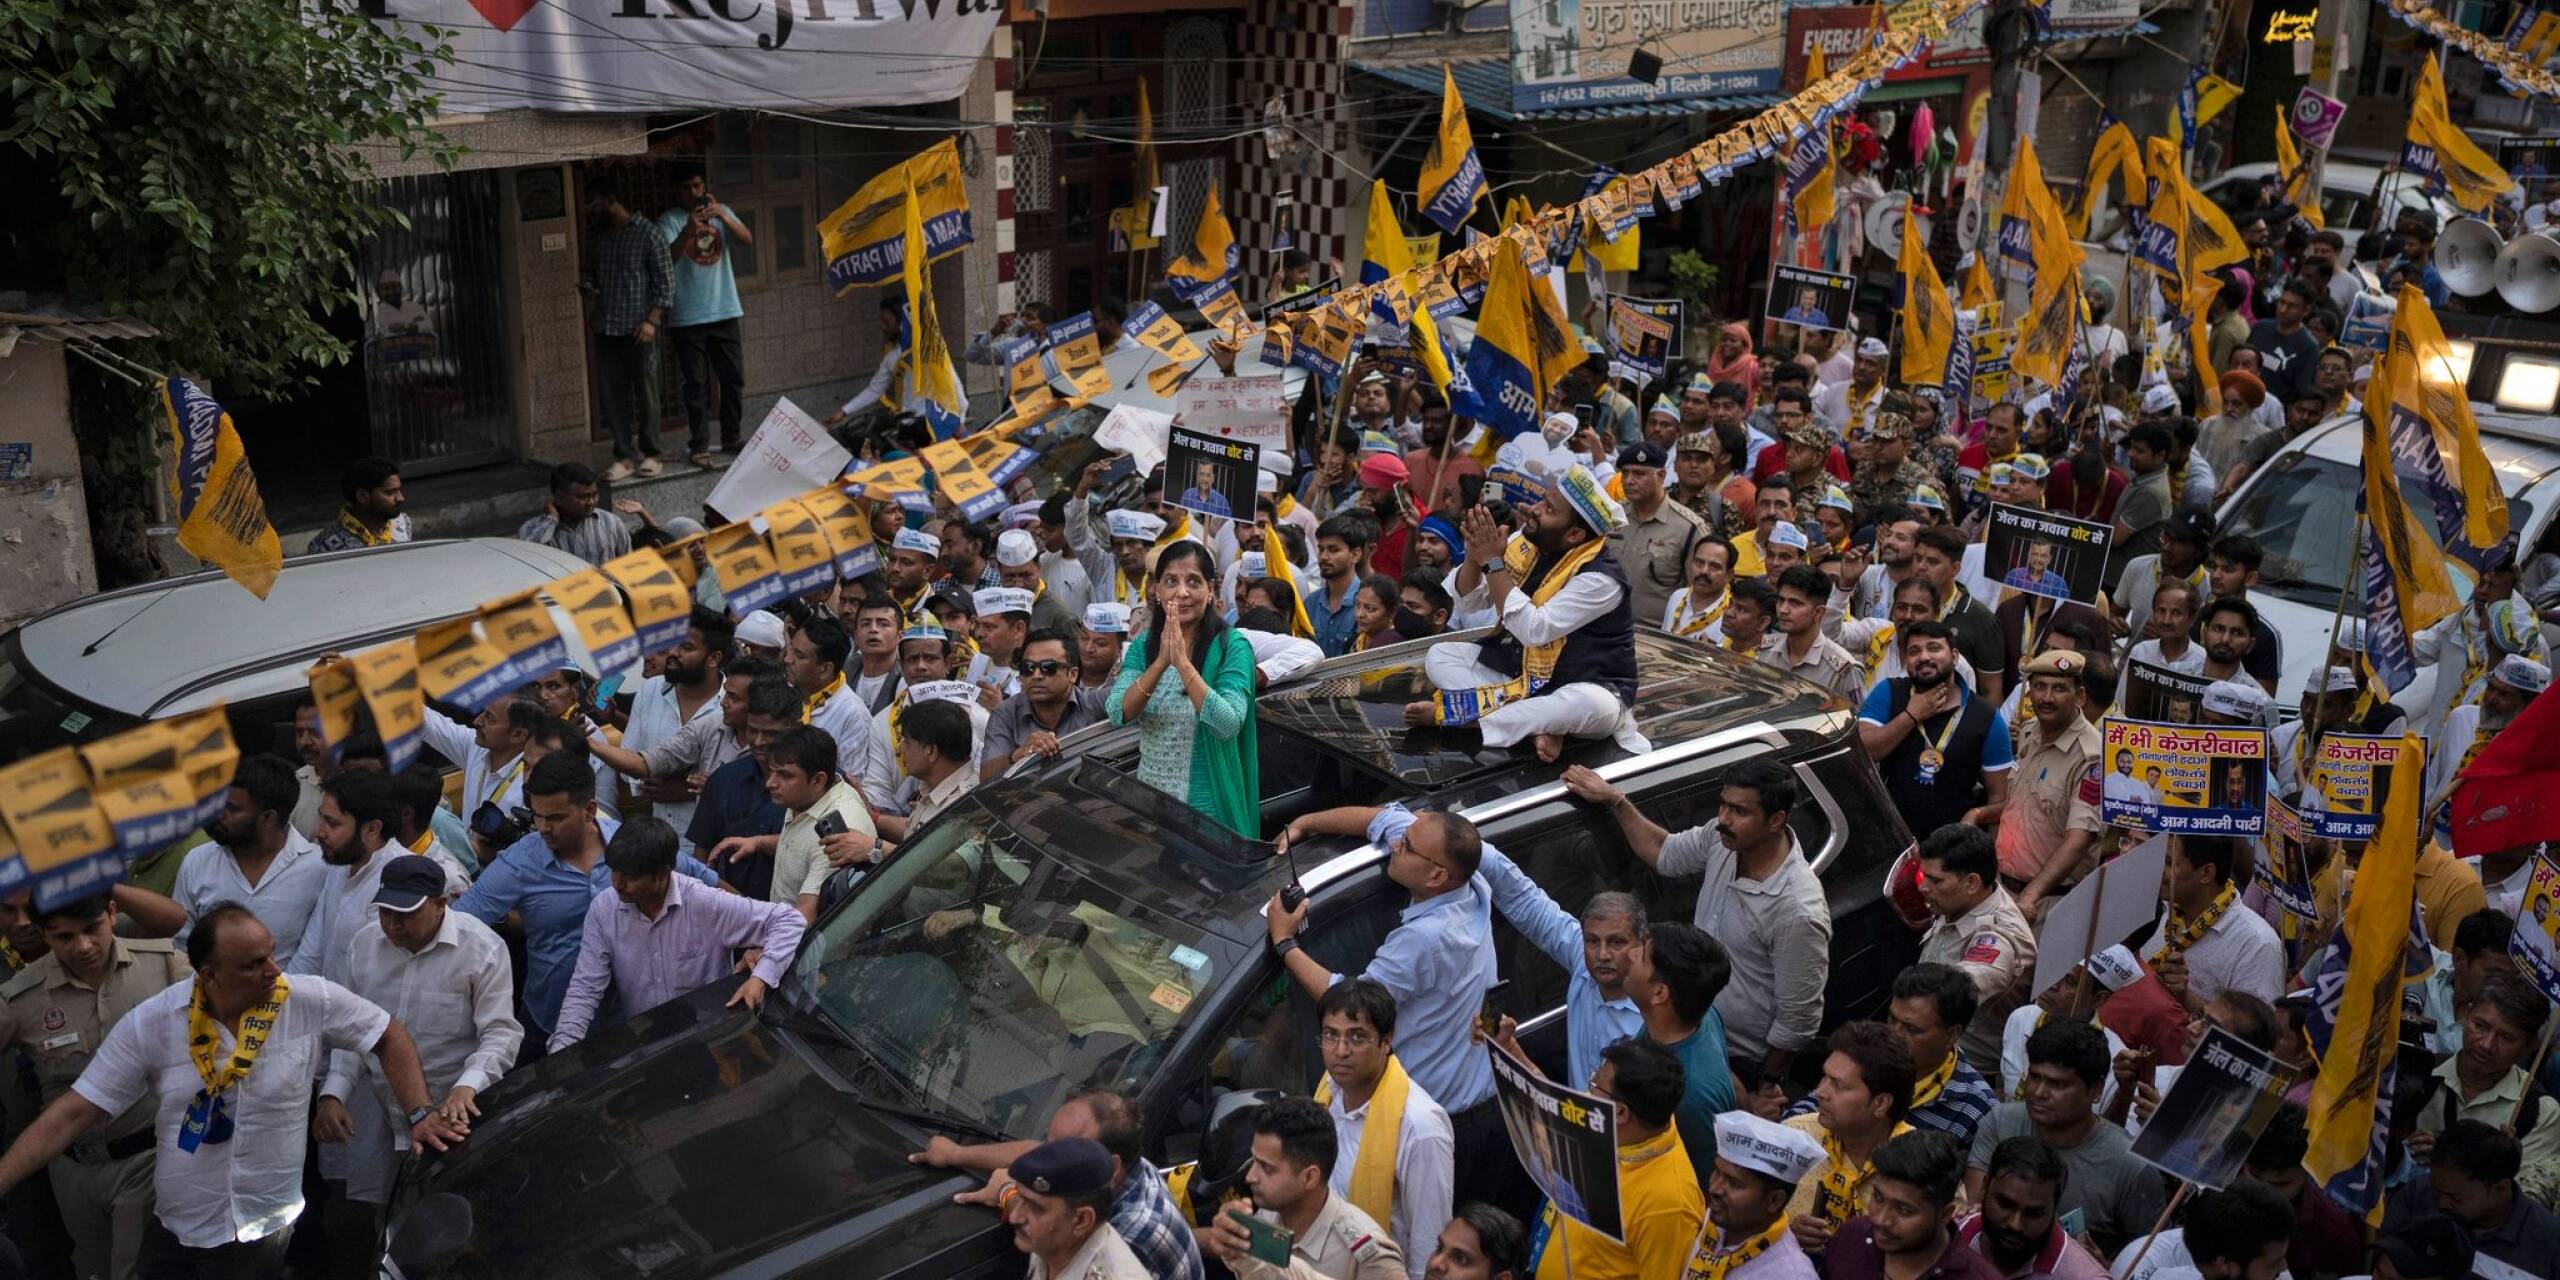 Mit einem Zug von Anhängern fährt Sunita Kejriwal während der laufenden Nationalwahlen in Indien durch die Straßen Neu Delhis. Ihr Ehemann Arvind Kejriwal, ehemaliger Regierungschef und prominenter Oppositionsführer, wurde im März verhaftet.